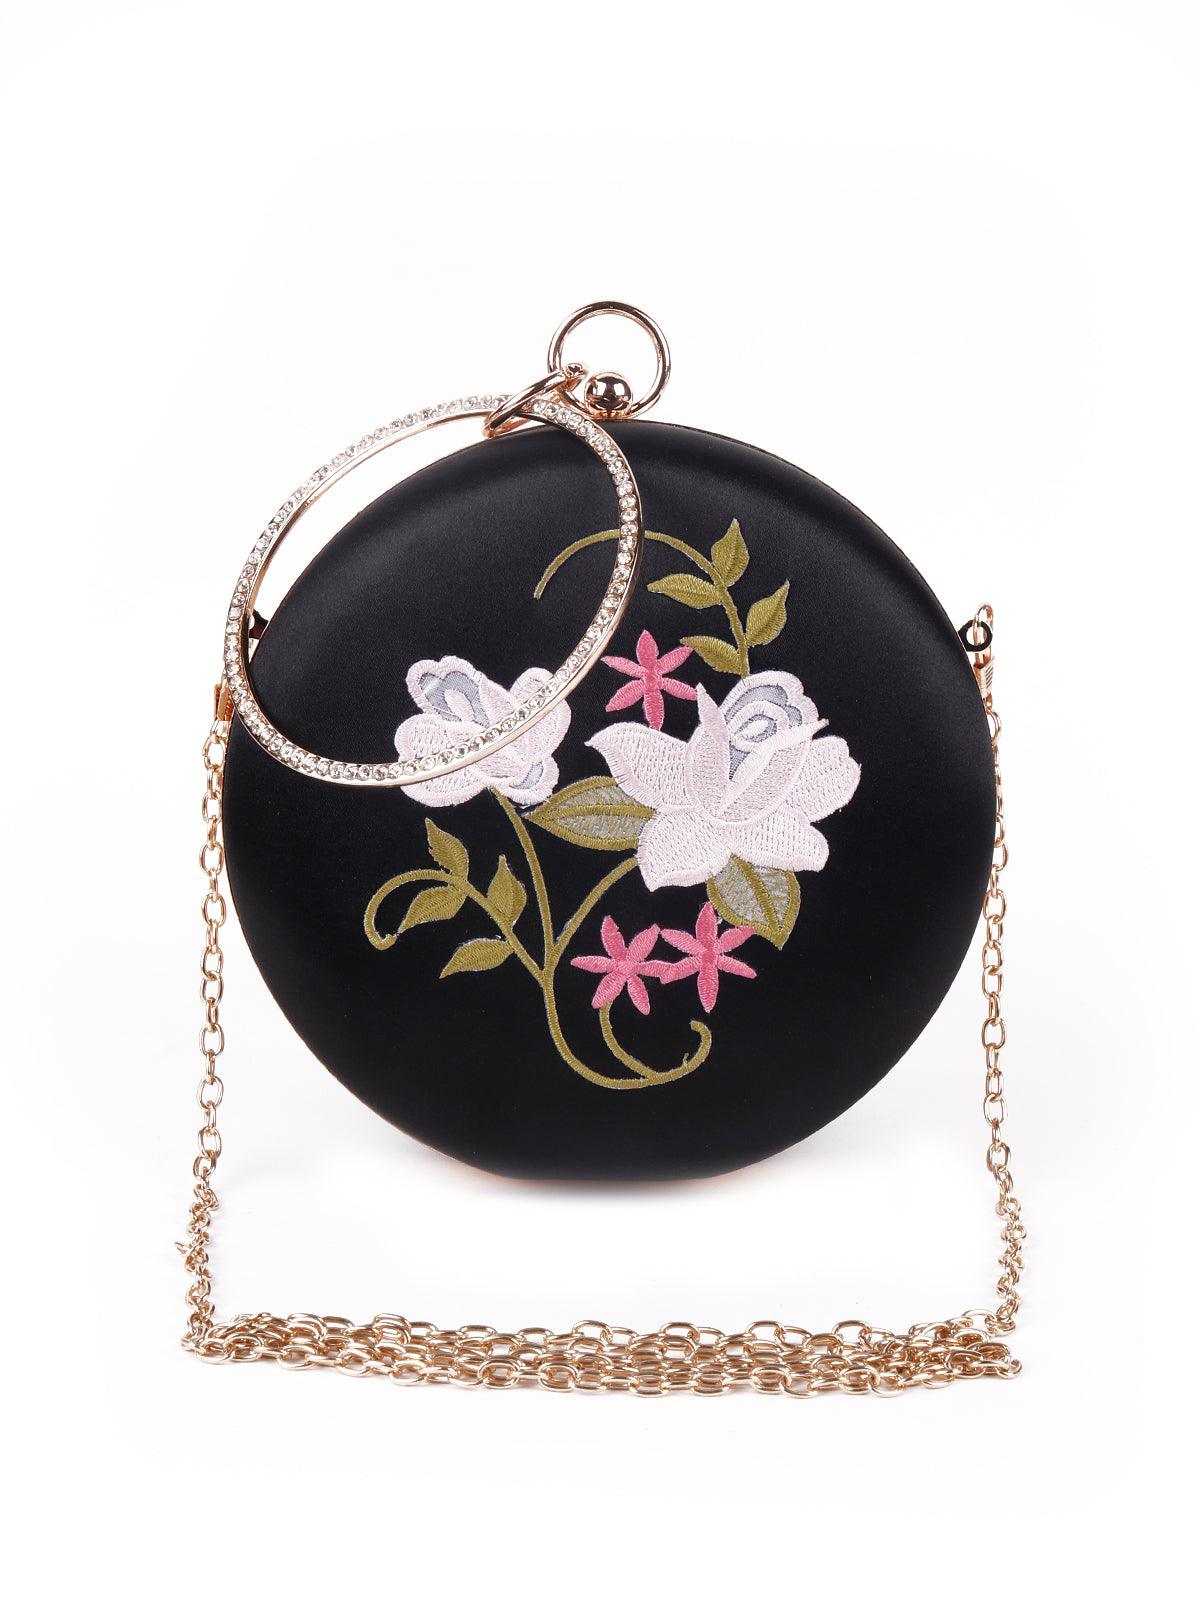 Floral Jet black rounded stylish sling bag - Odette